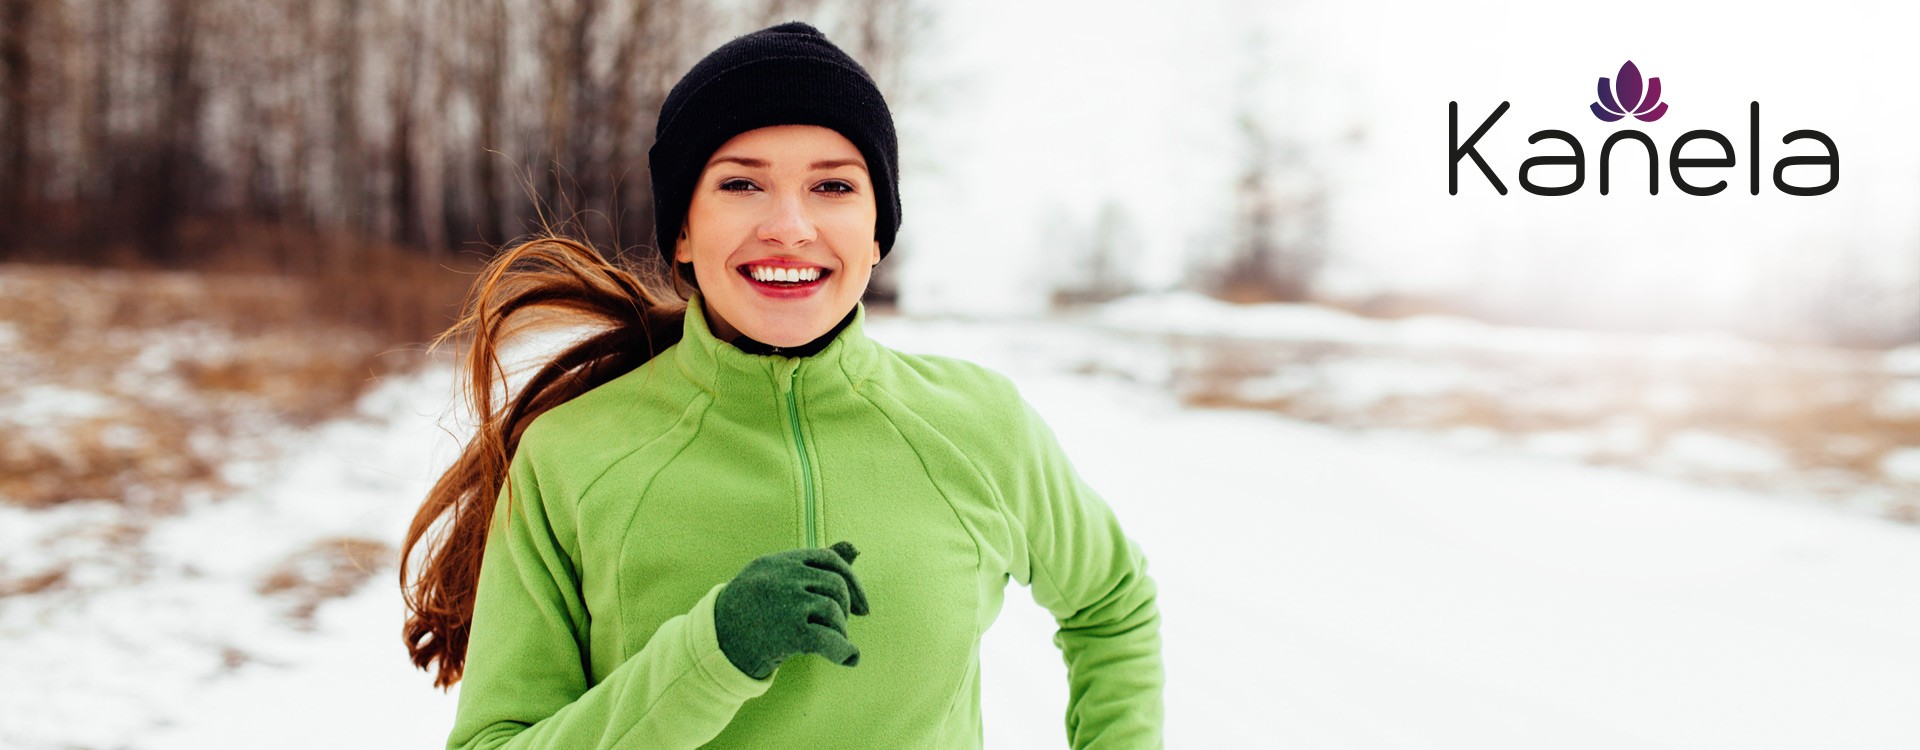 Sport im Winter: Motivations-Tipps gegen Kälte und schlechtes Wetter